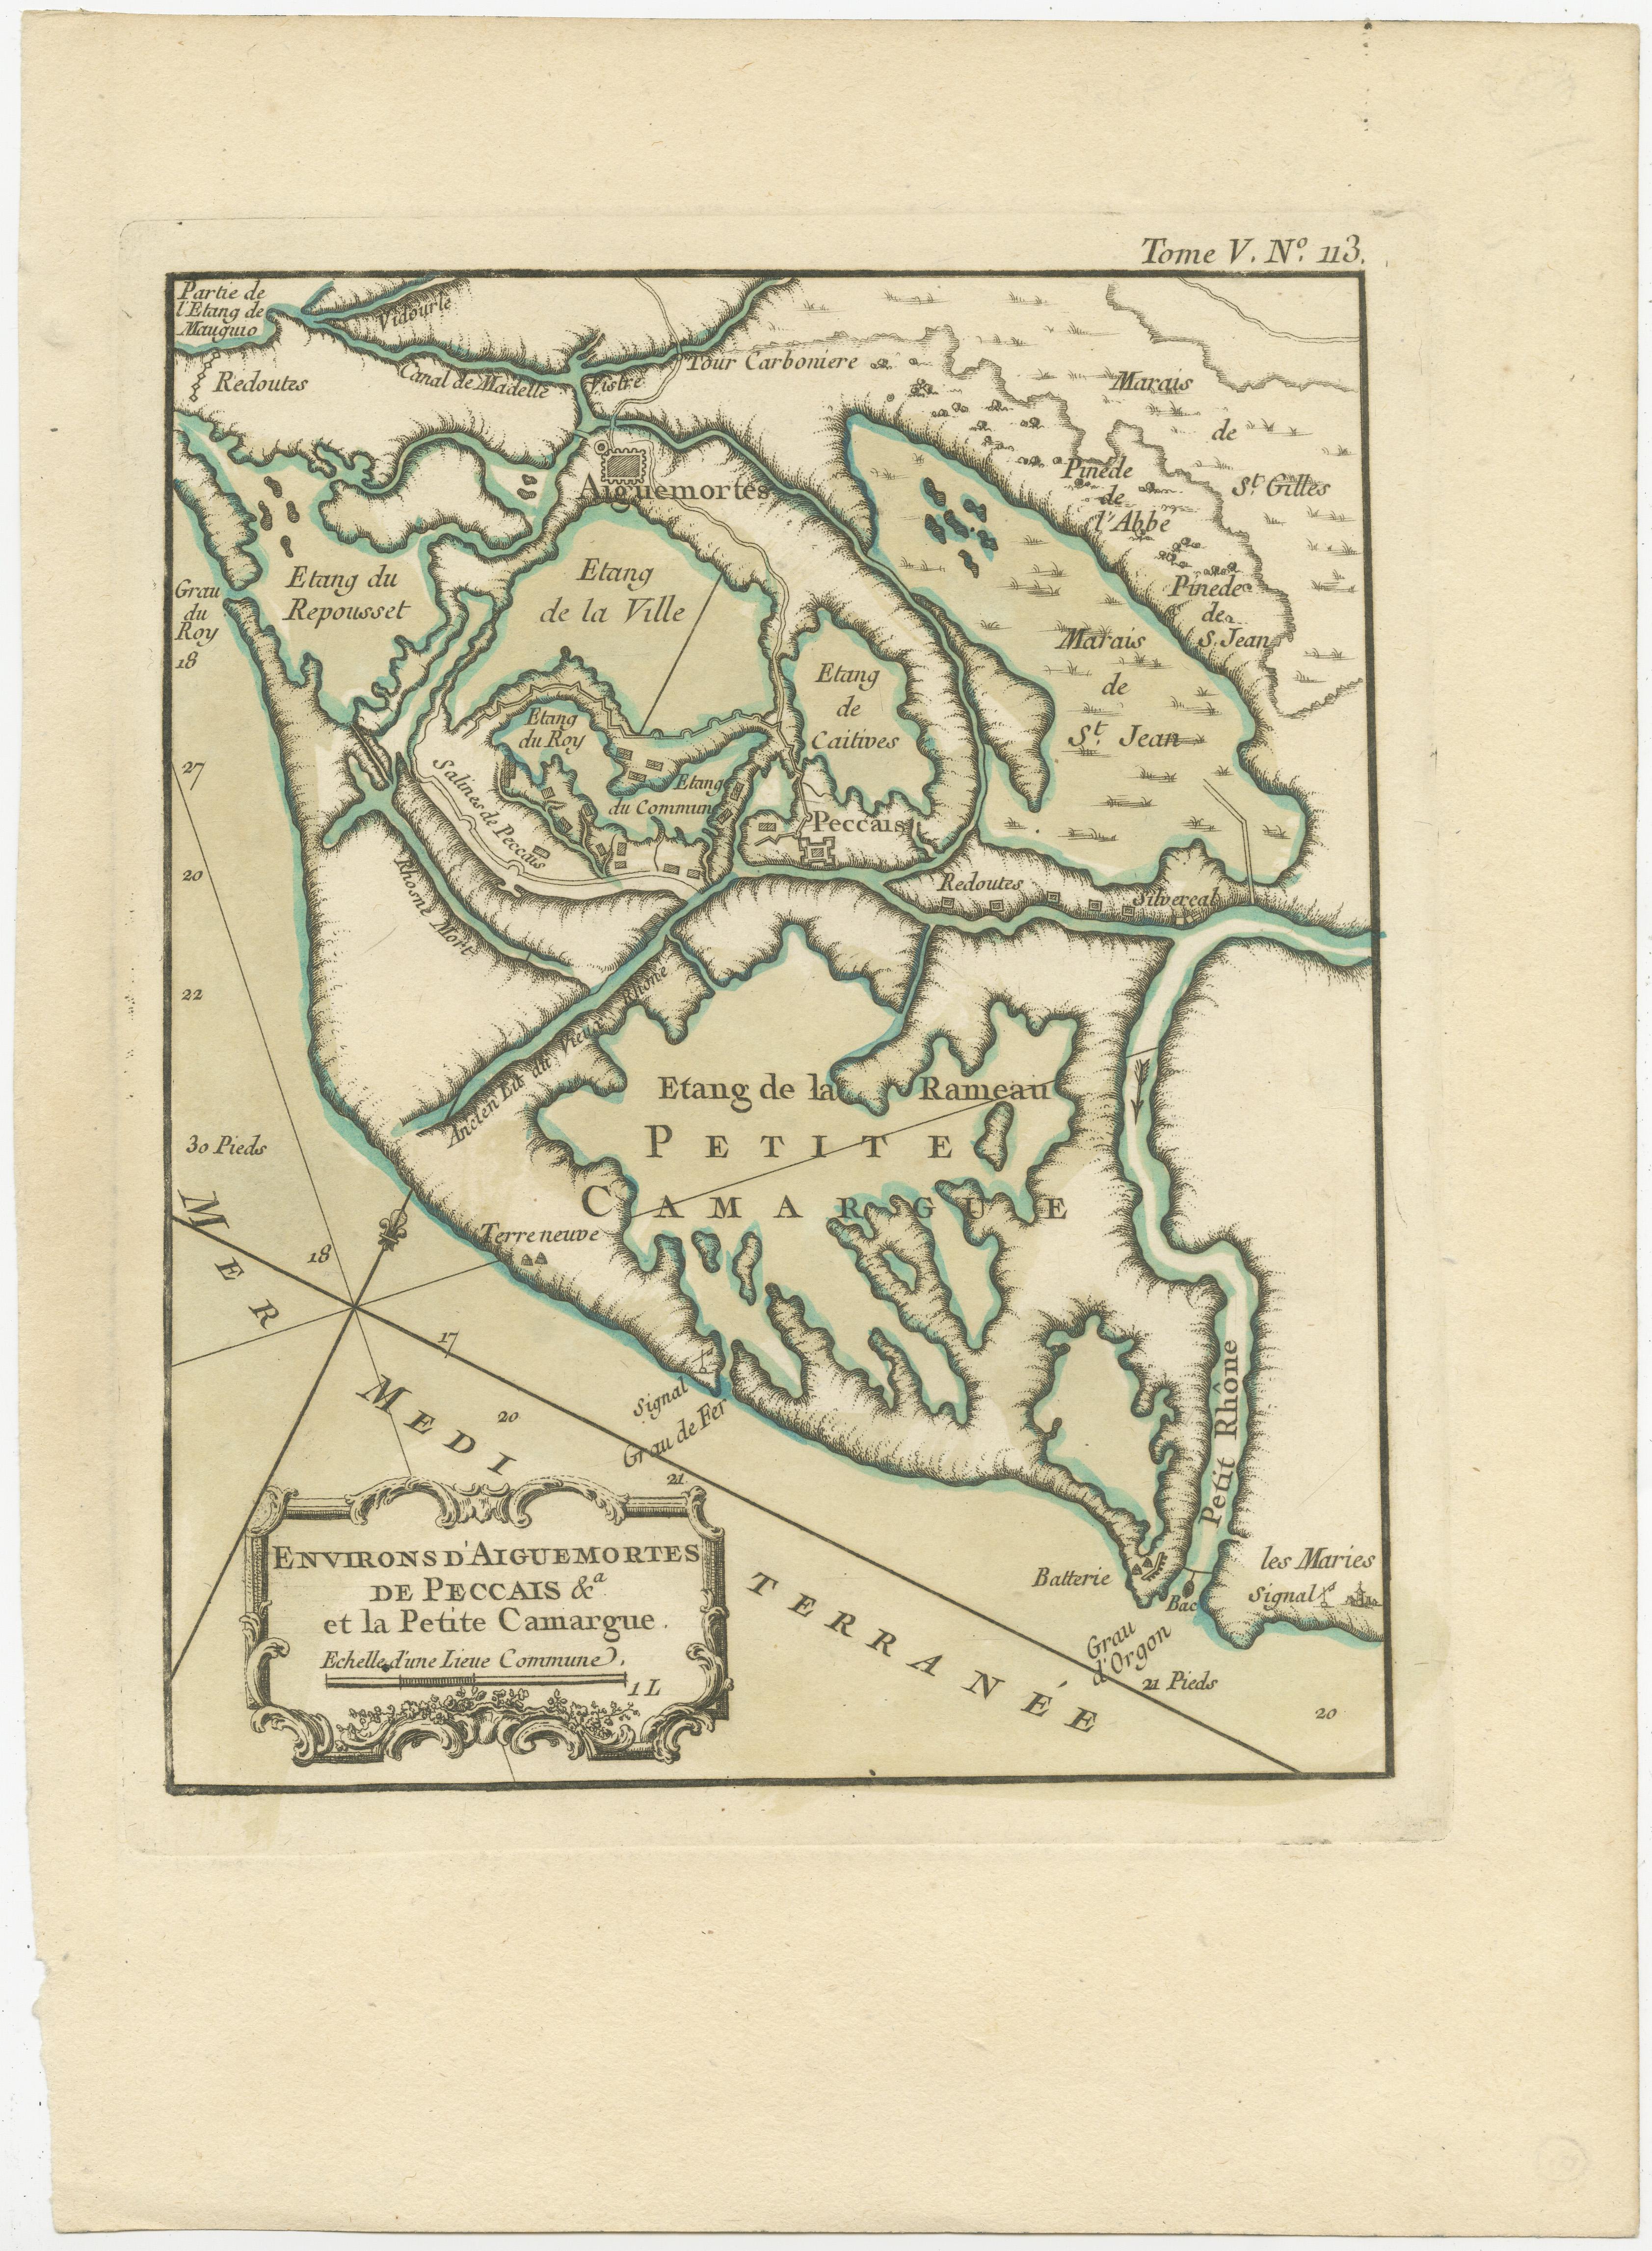 Antique map titled 'Environs d'Aiguemortes de Peccais &a et la petite Camargue'. Original map of the region of Aigues-Mortes and Camargue, France. This map originates from 'Le Petit Atlas Maritime (..)' by J.N. Bellin. Published 1764. 

Bellin was